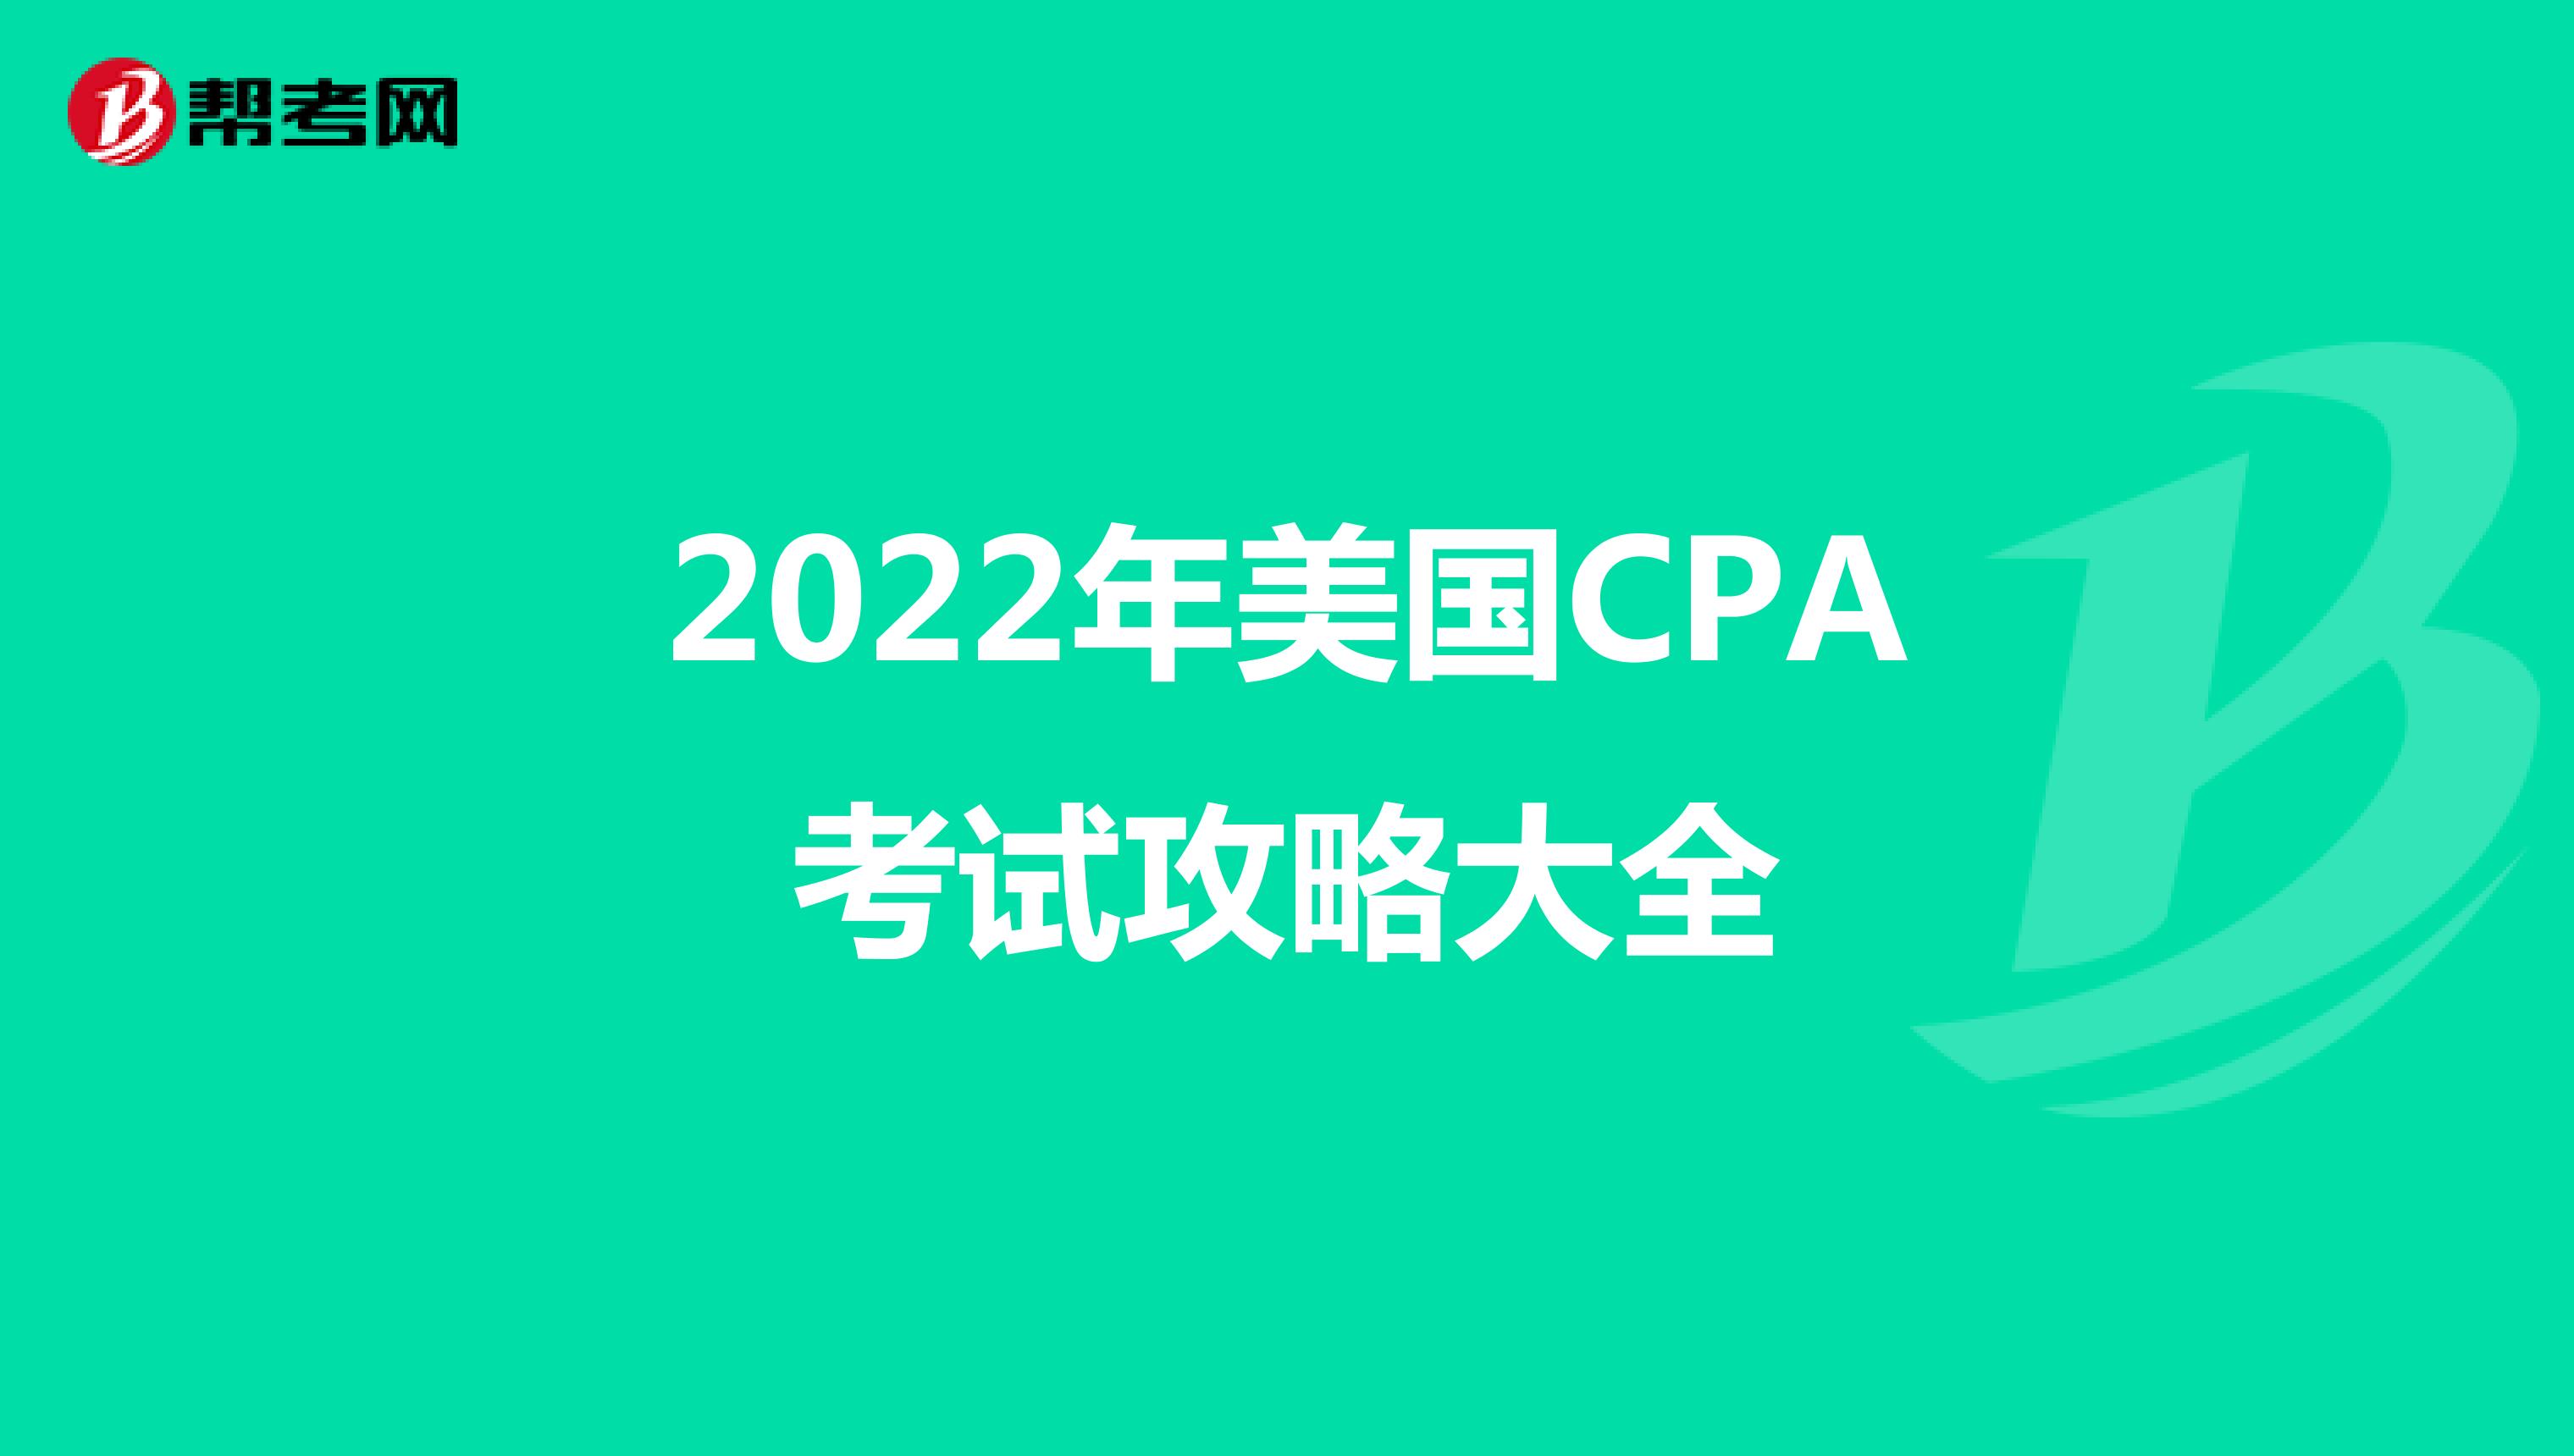 2022年美国CPA考试攻略大全